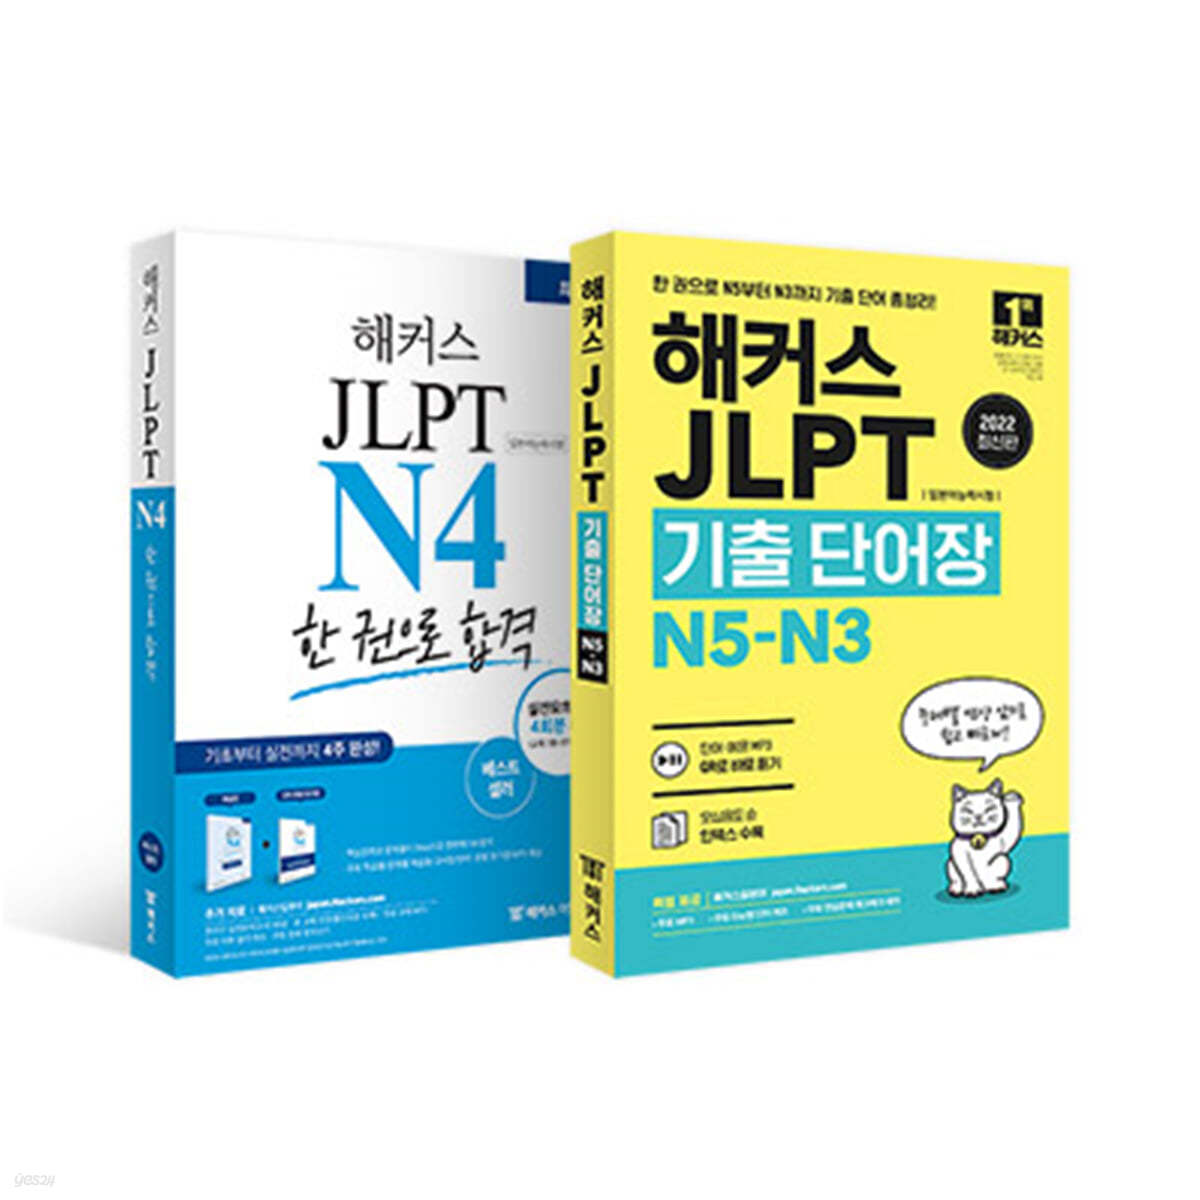 해커스 일본어 JLPT N4 기본서 + 모의고사 + 기출보카 세트